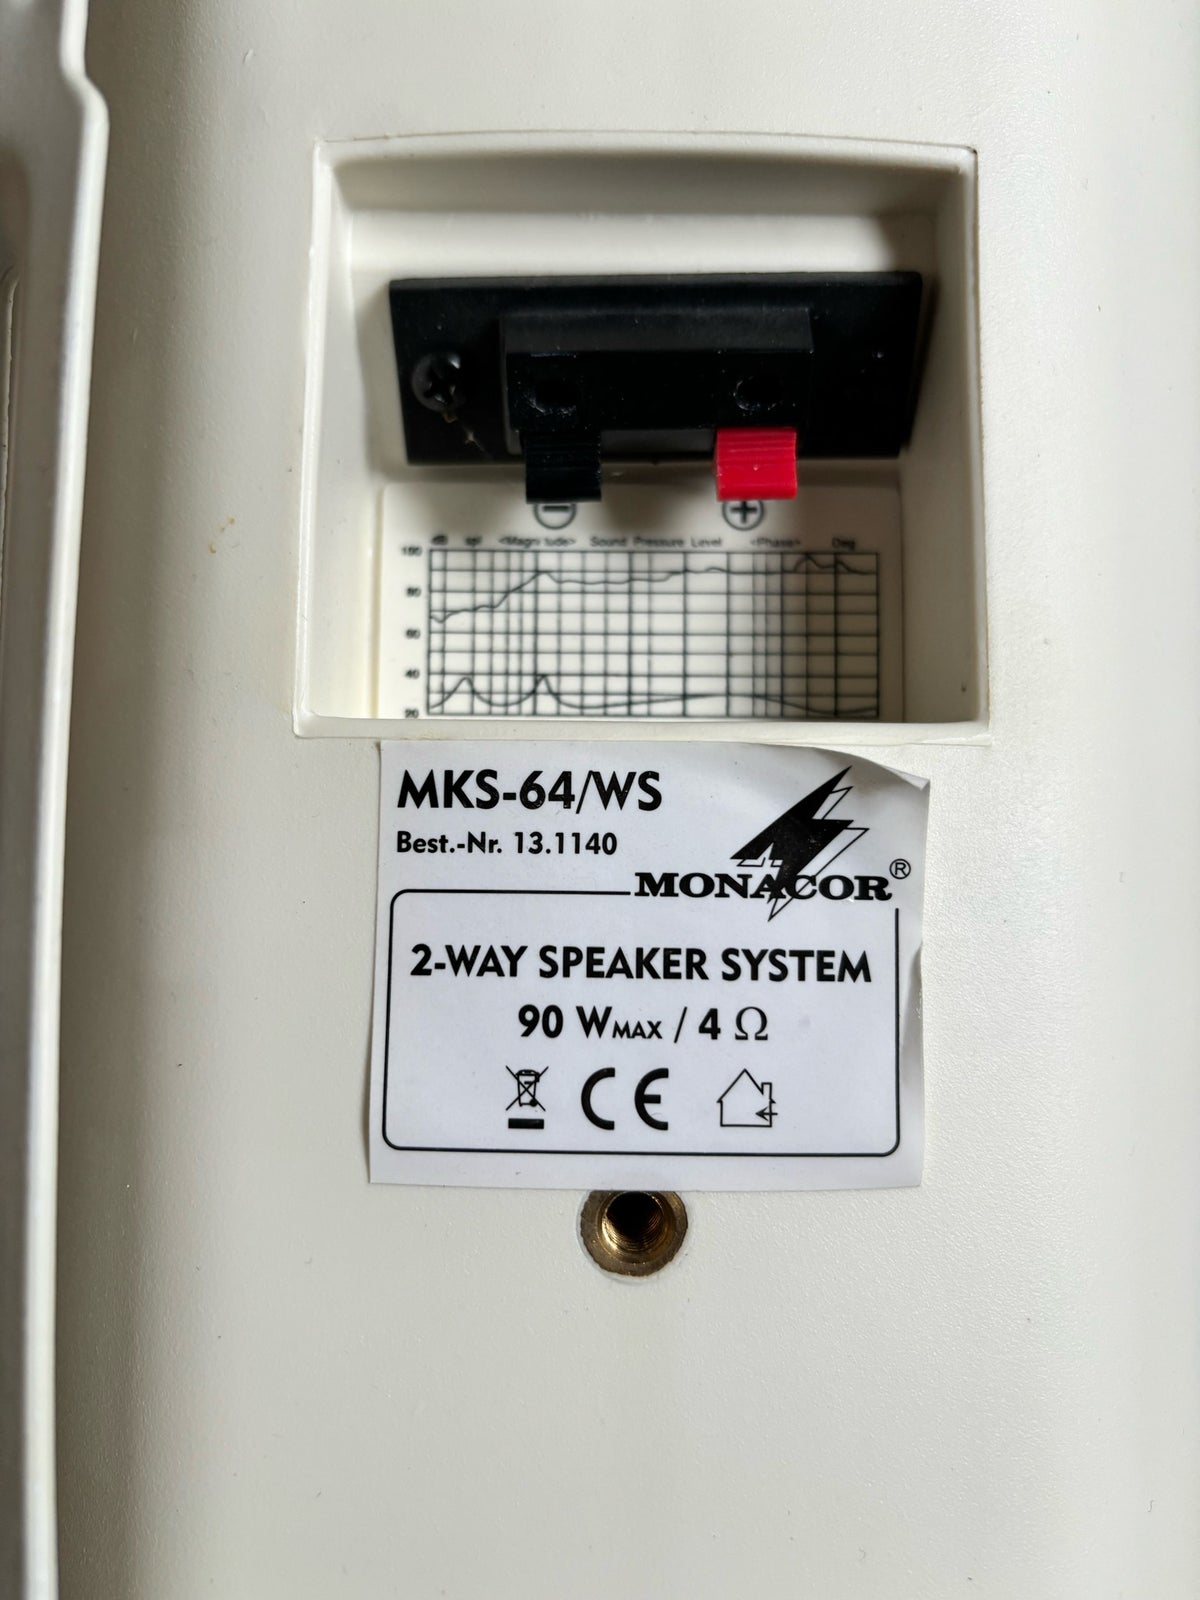 Passiv Monitorer, Monacor MKS-64/WS